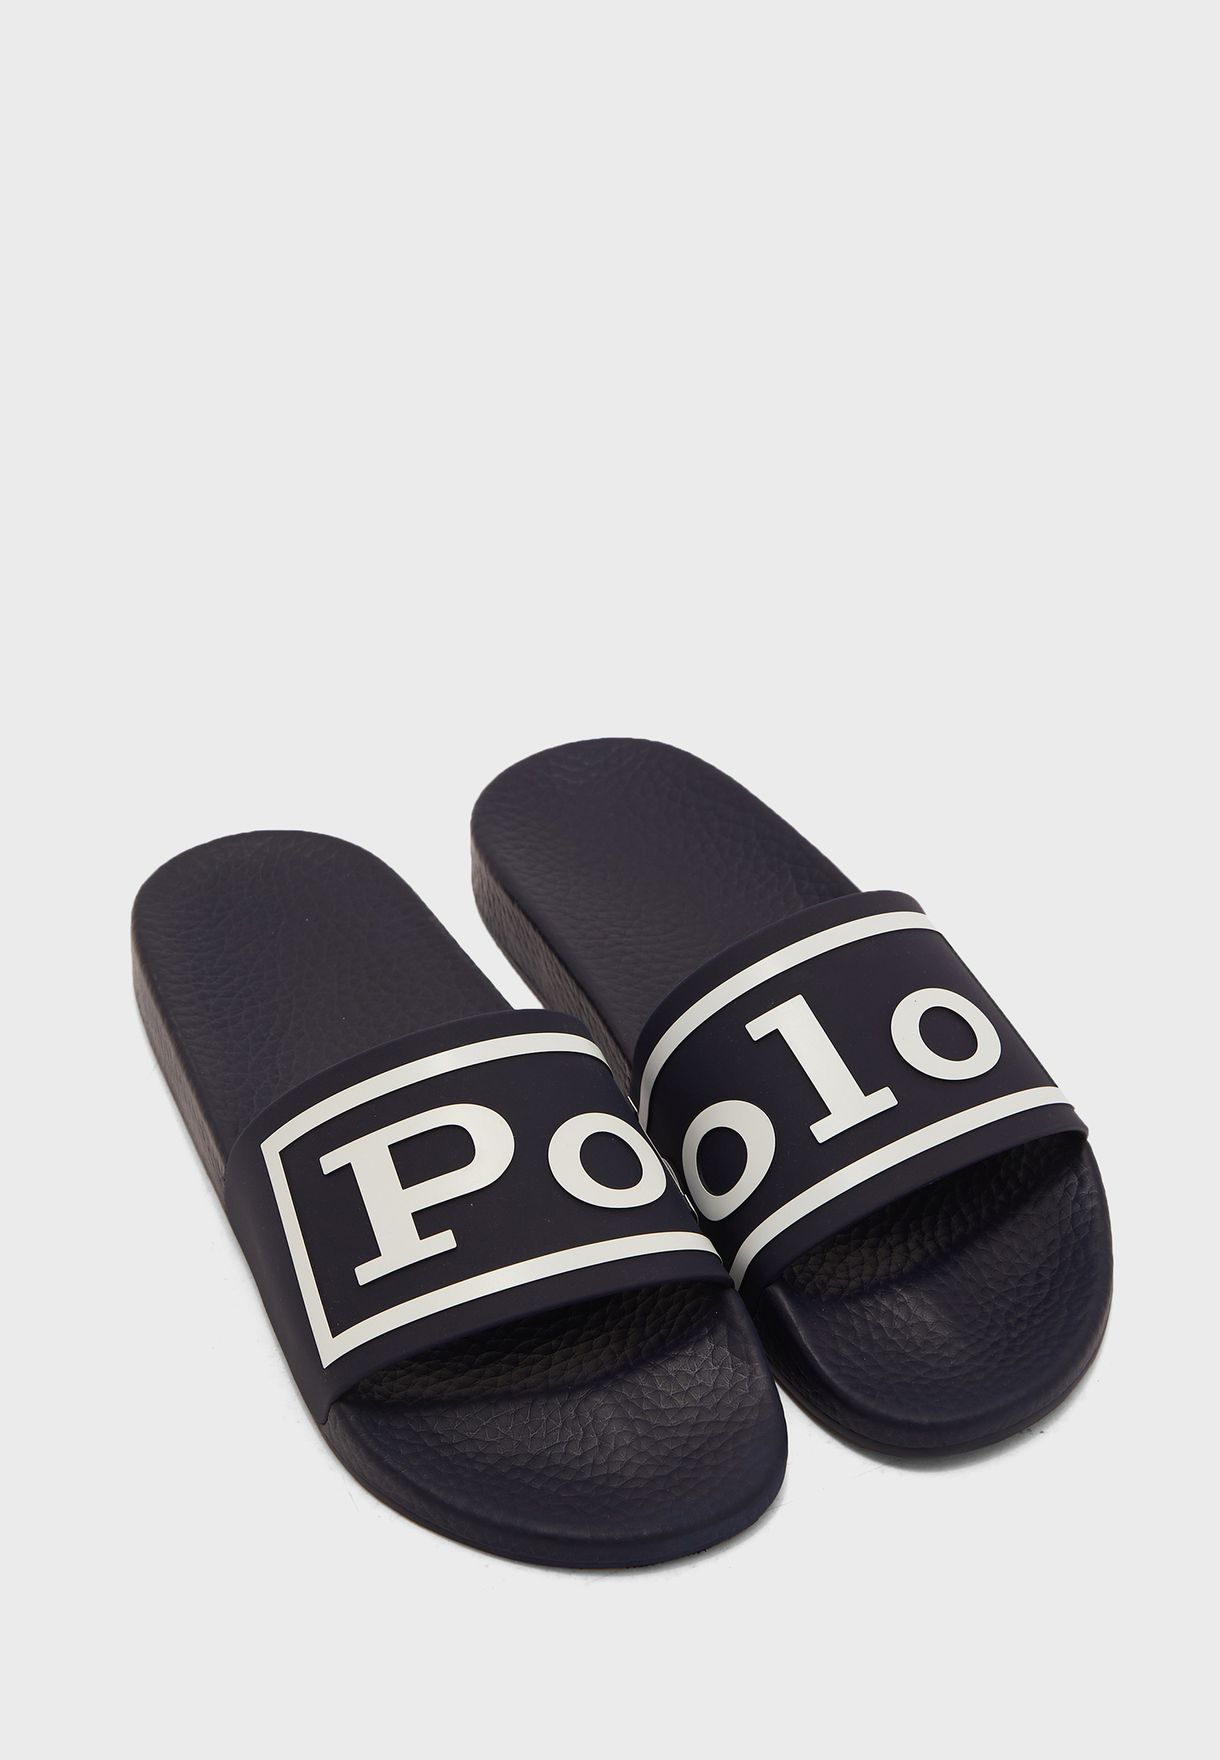 Polo Slides